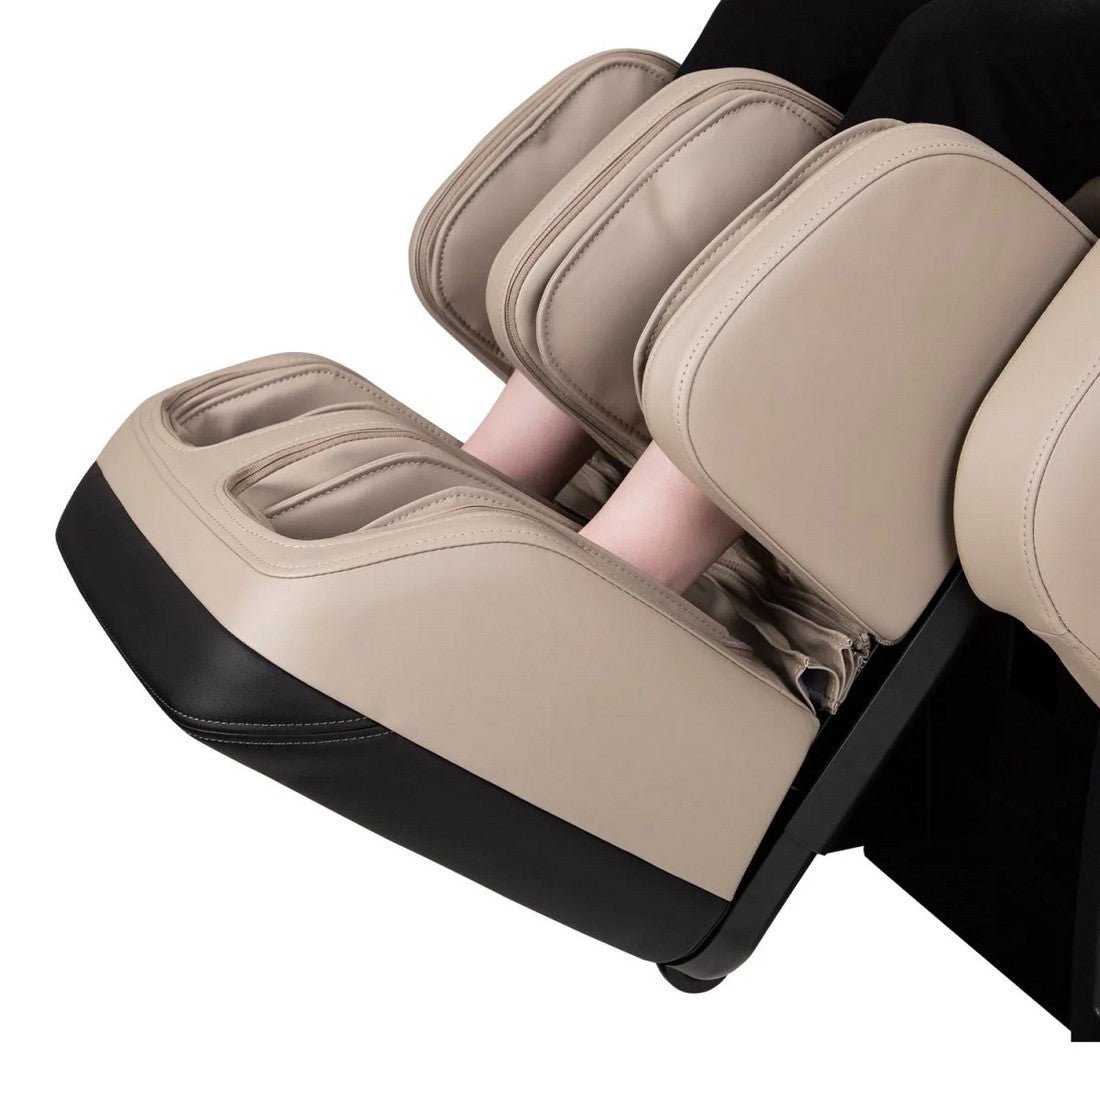 Titan 3D JP650 Massage Chair